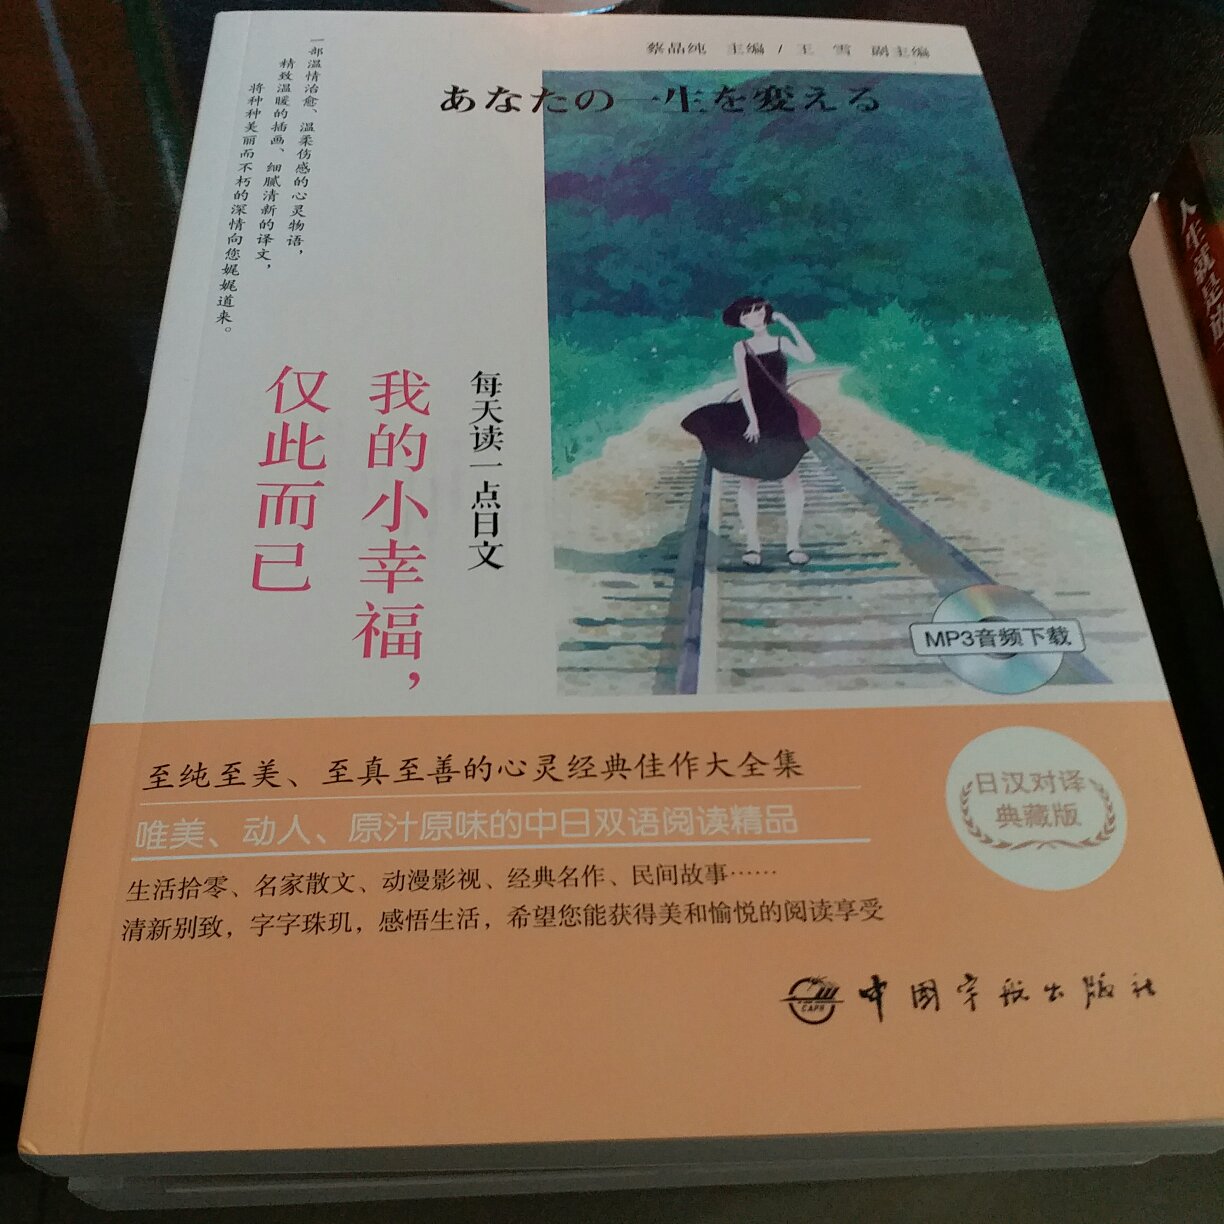 书到的很快，这是一本日汉对照的书，以前学过一点日语，慢慢看，挺有趣的。